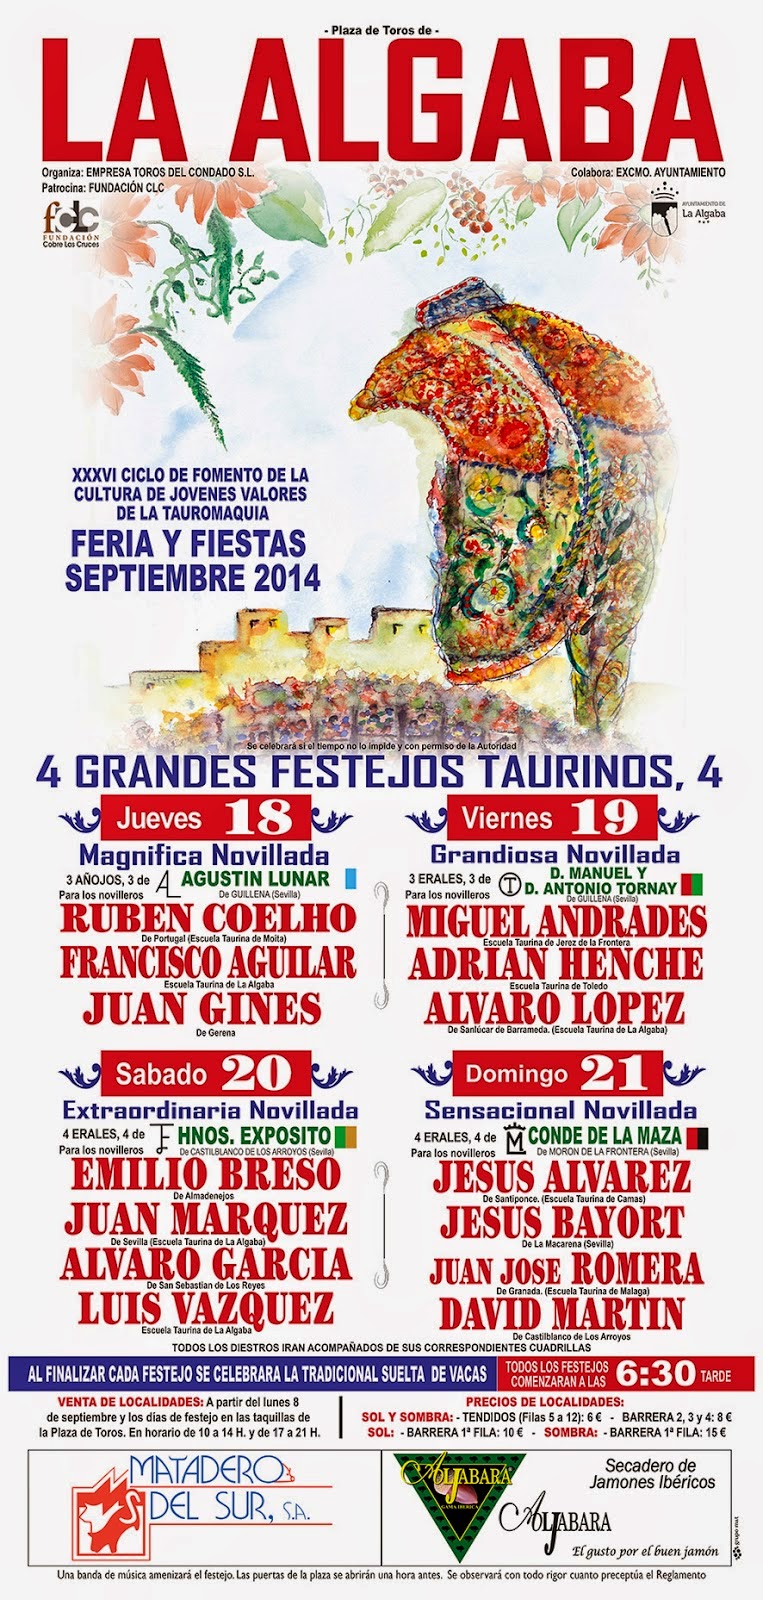 La Algaba Feria 2014 Cartel Festejos Taurinos